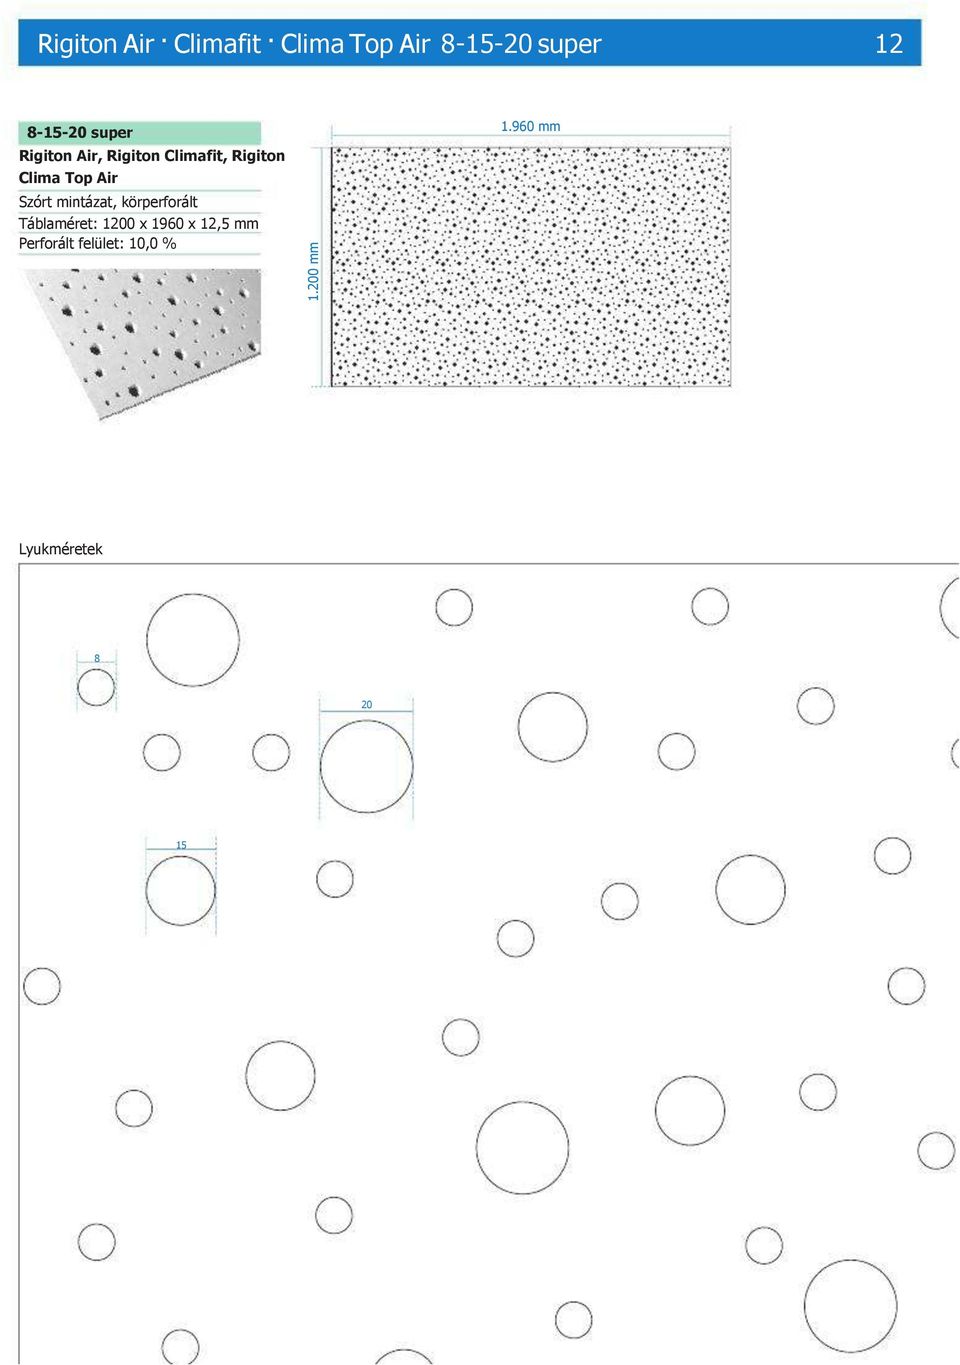 Szórt mintázat, körperforált Táblaméret: 1200 x 1960 x